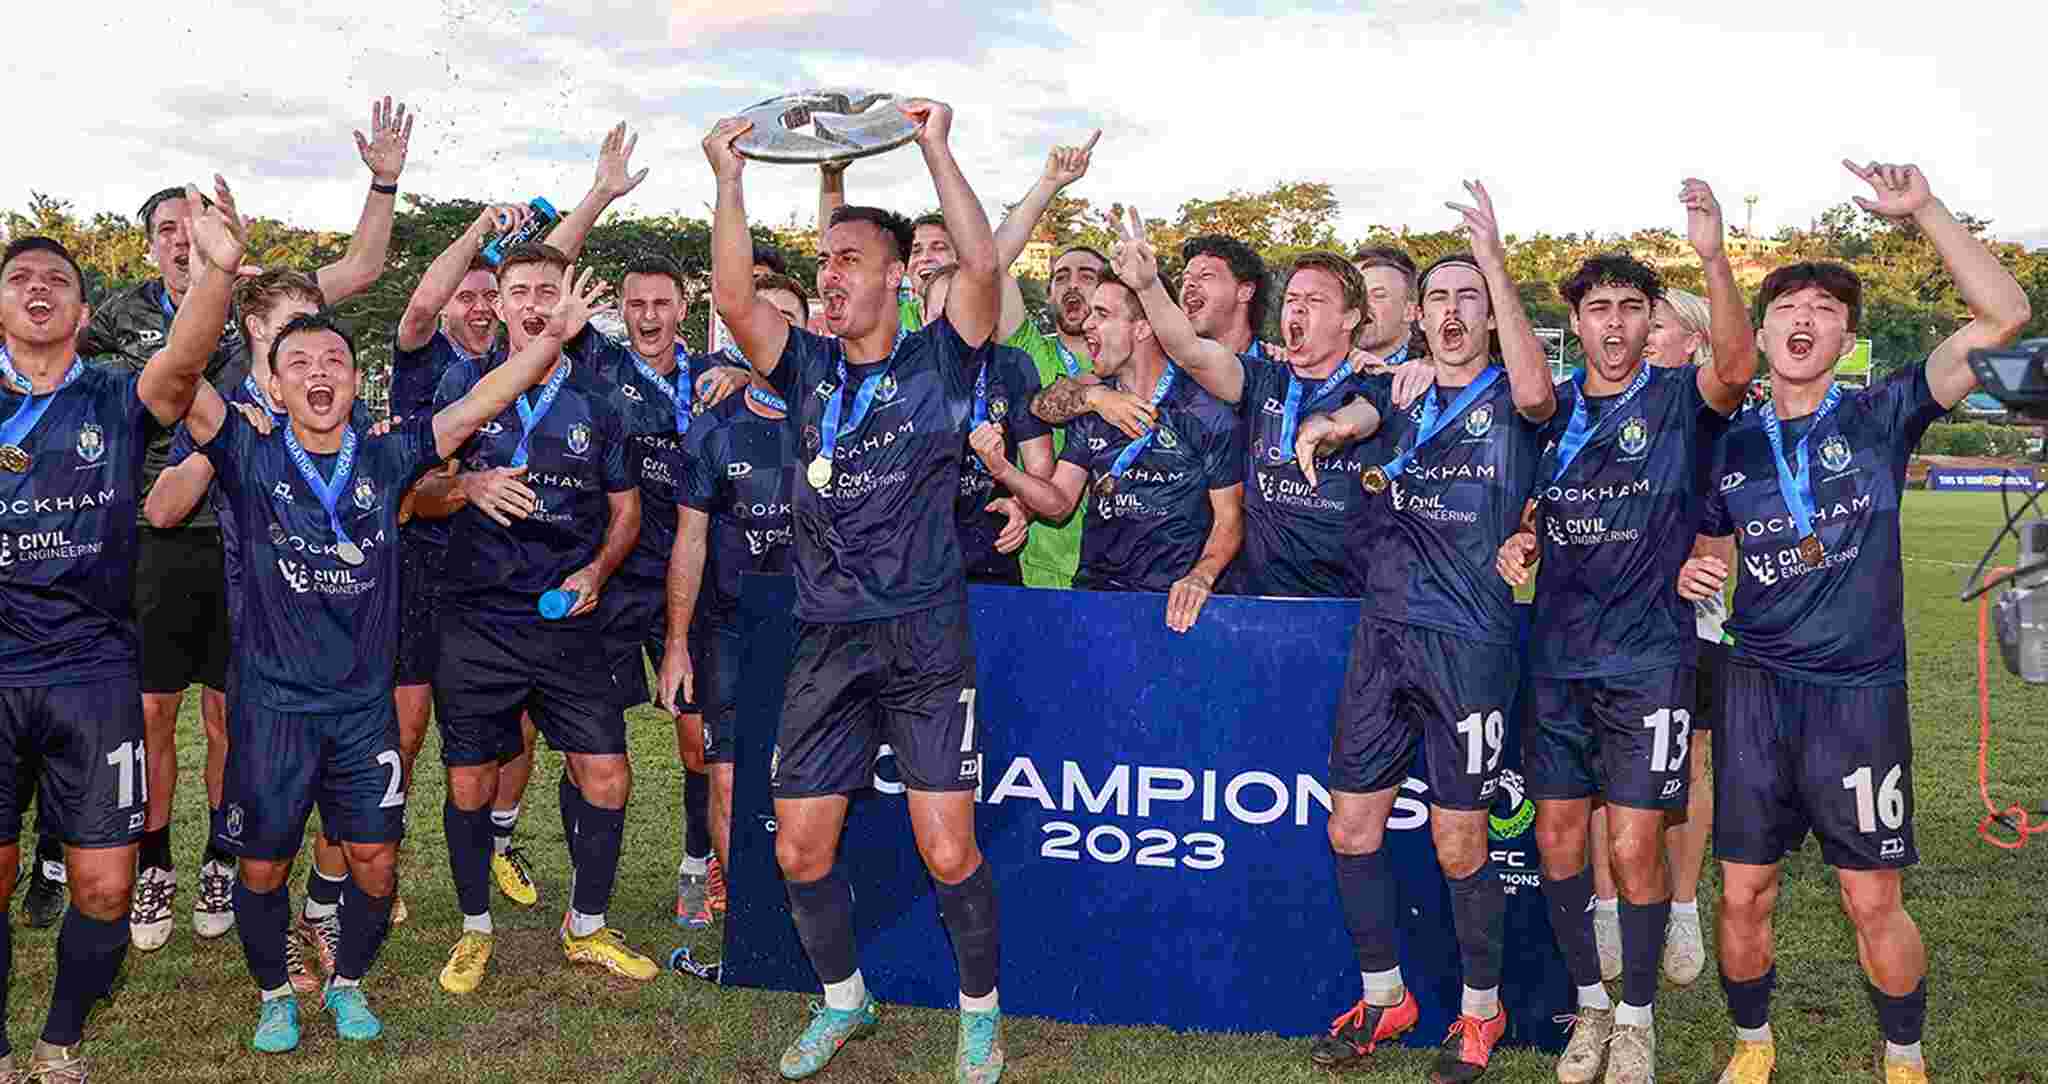 Auckland City (Nova Zelândia) - Campeão da Liga dos Campeões da OFC (Oceania).